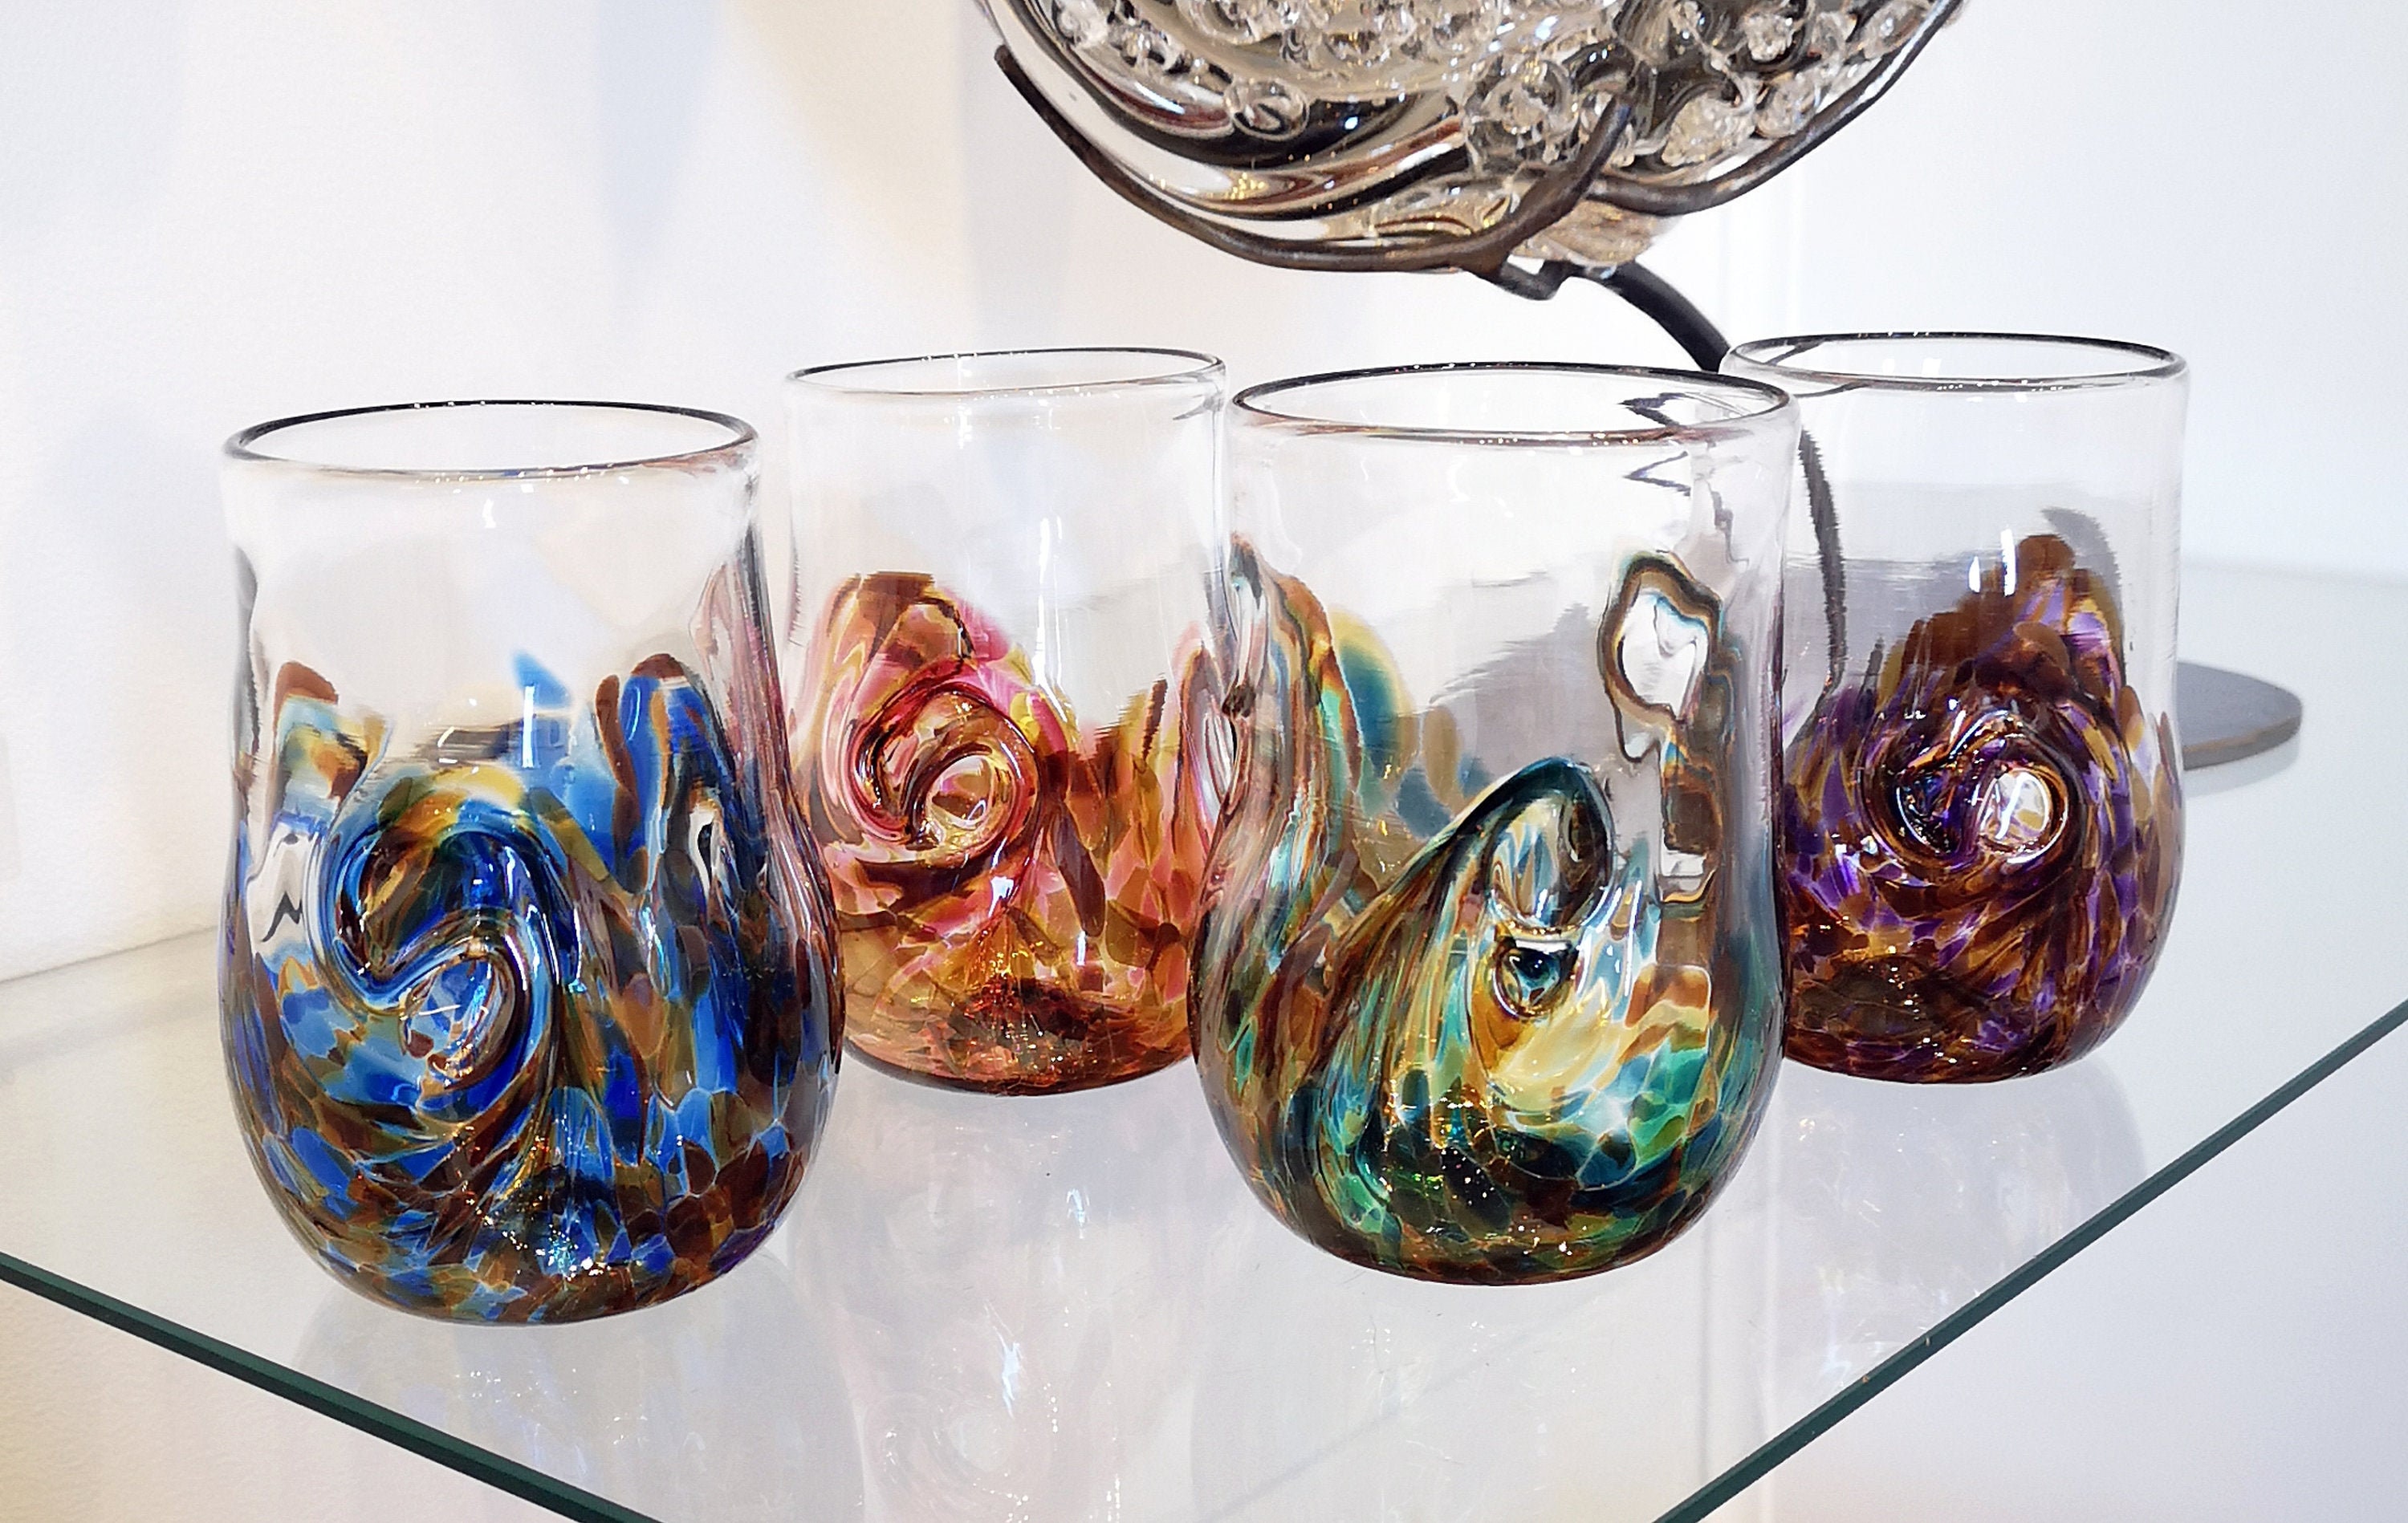 Tall Handblown Stemless Glass — AO Glass